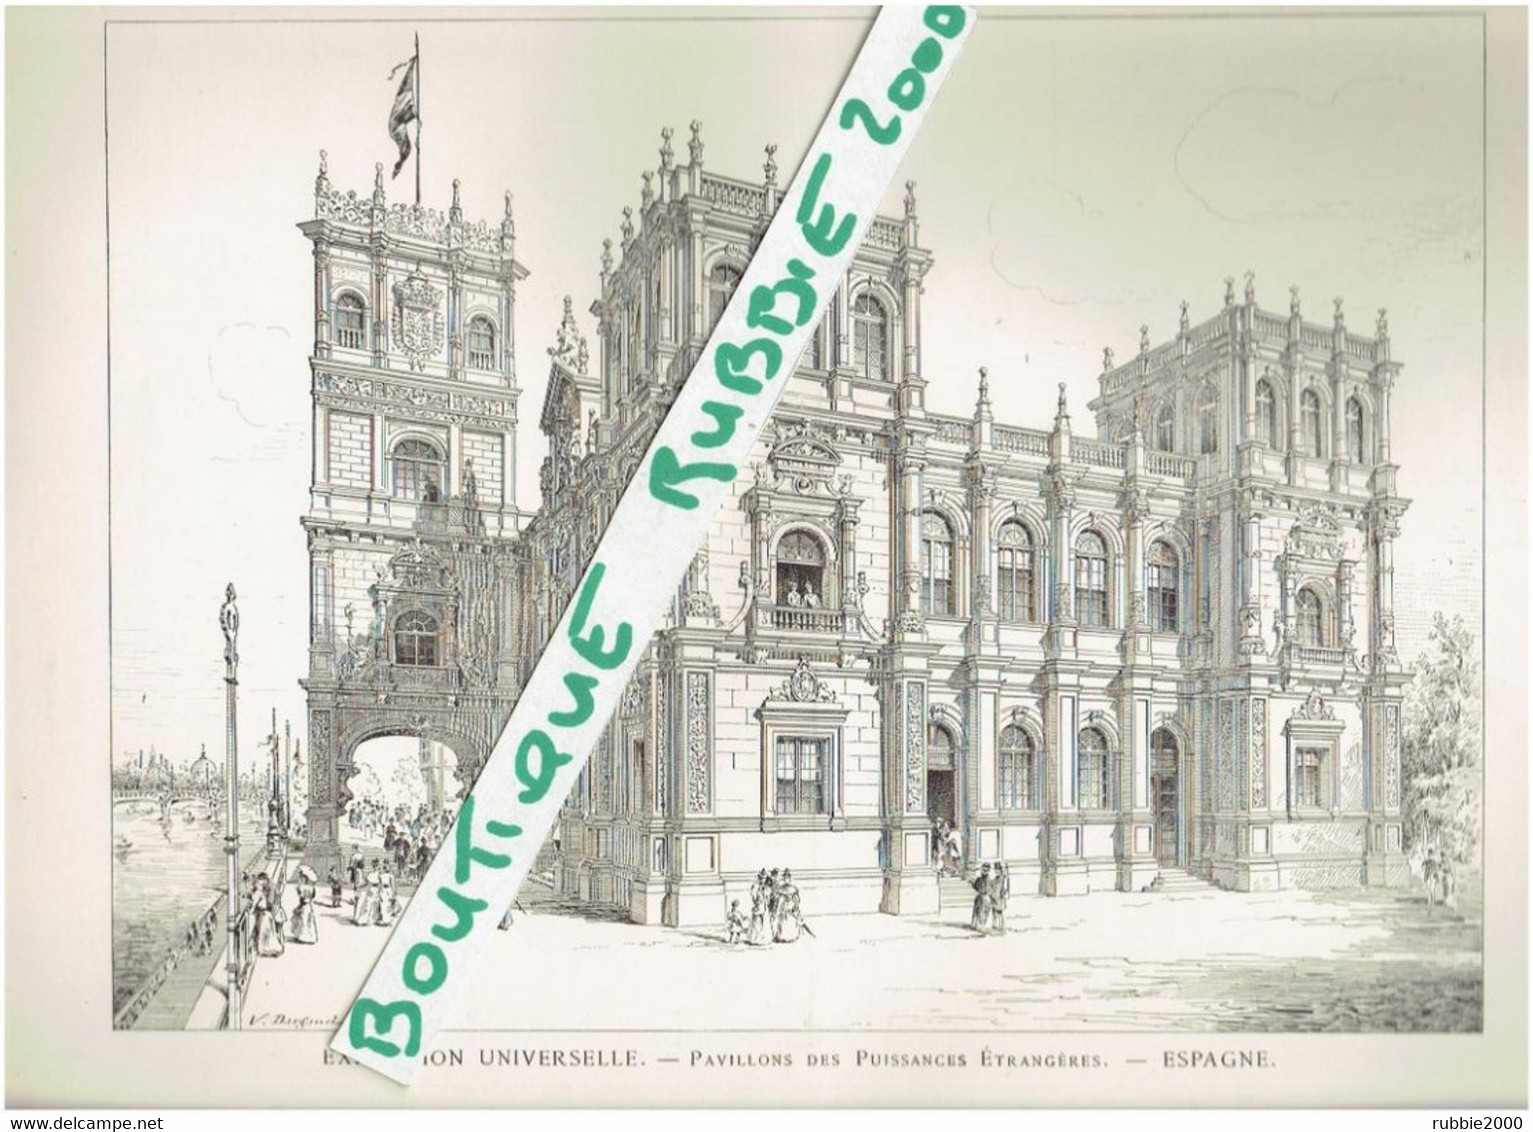 EXPOSITION UNIVERSELLE DE PARIS 1899 ESPAGNE DESSIN PAVILLON DES PUISSANCES ETRANGERES - Parijs